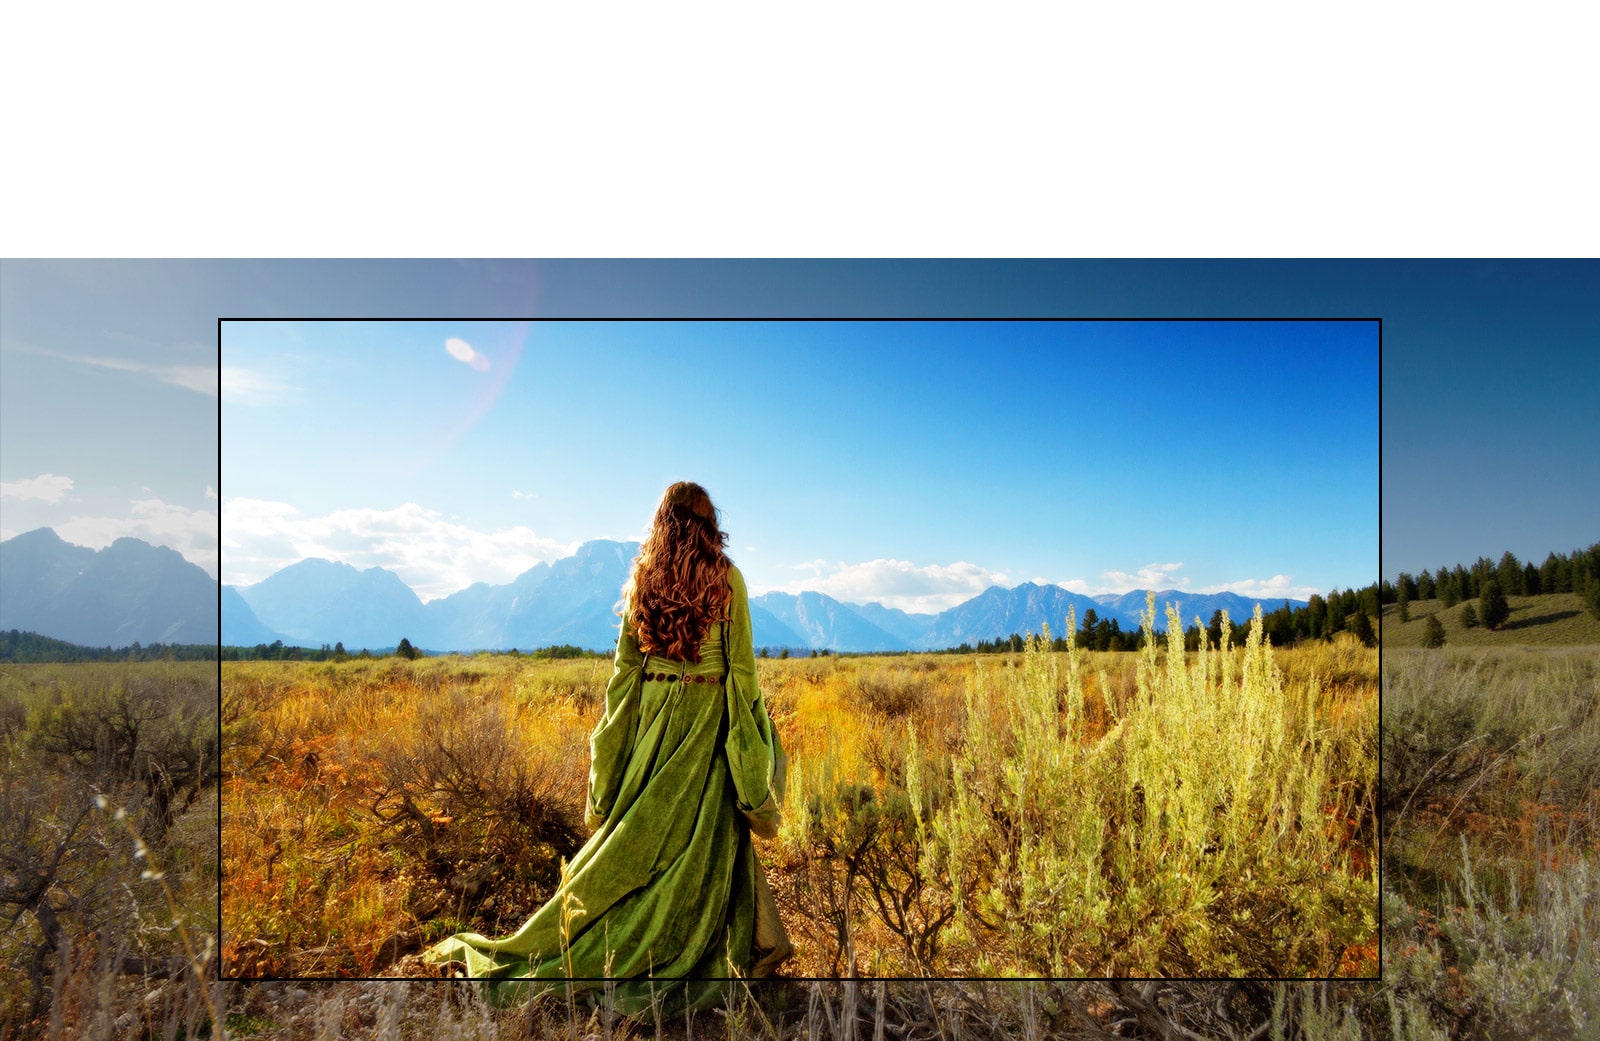 شاشة لتلفزيون يعرض أحد المشاهد من فيلم خيالي تظهر فيه امرأة تقف في الحقول المواجهة للجبال.